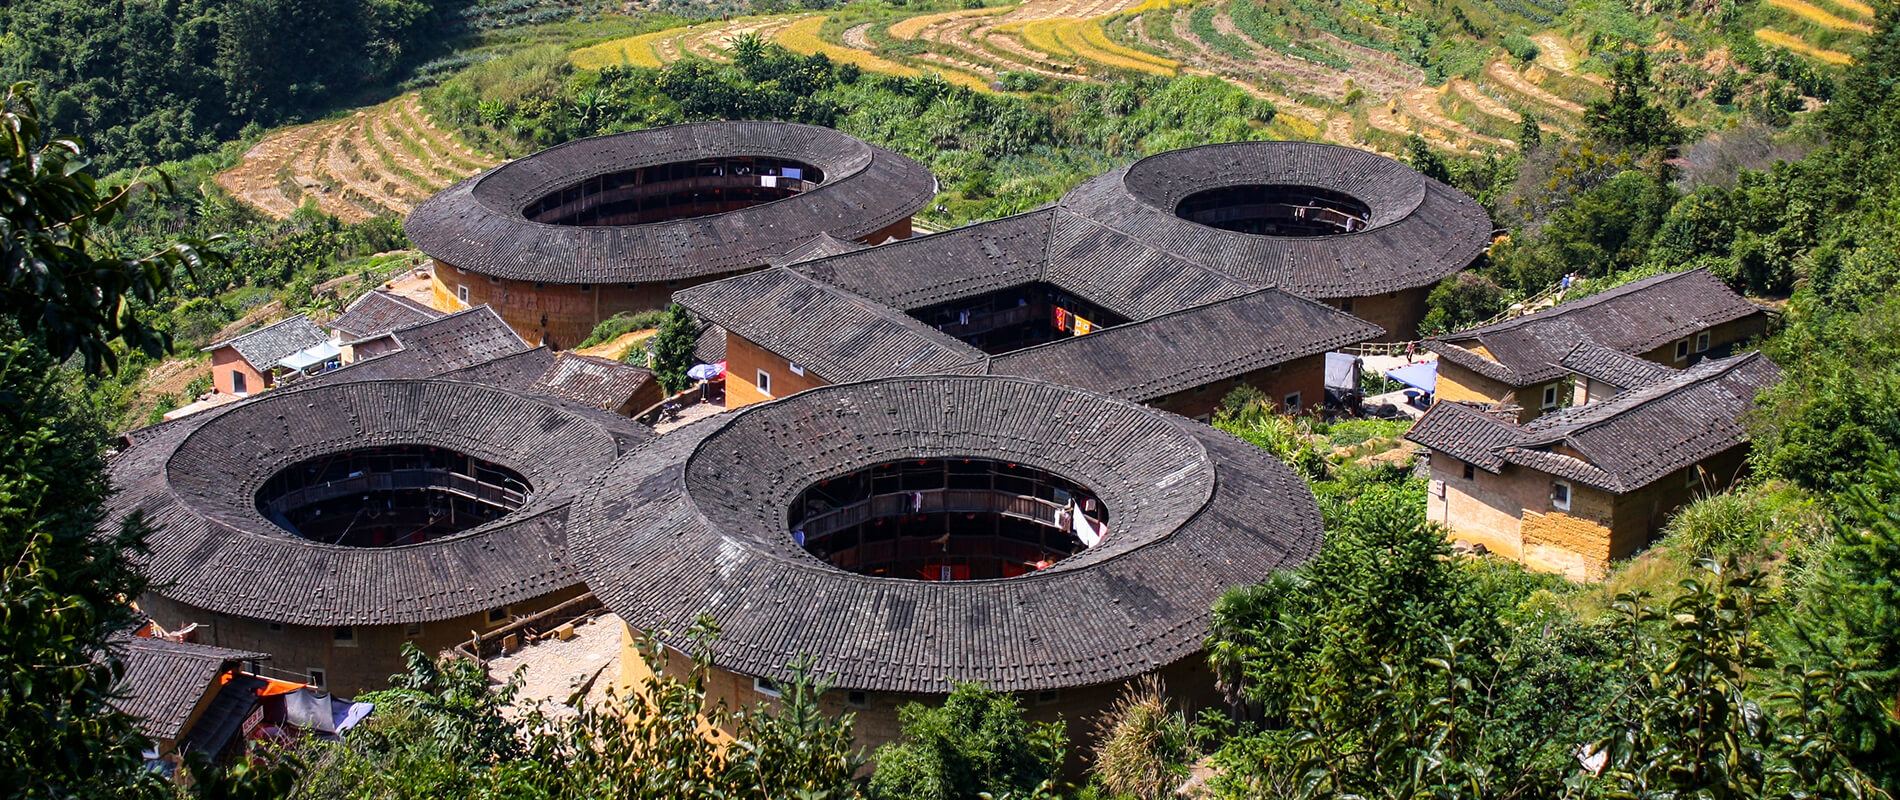 Thổ lâu – kiến trúc đặc biệt của người Trung Quốc cổ xưa khiến du khách choáng ngợp - 1